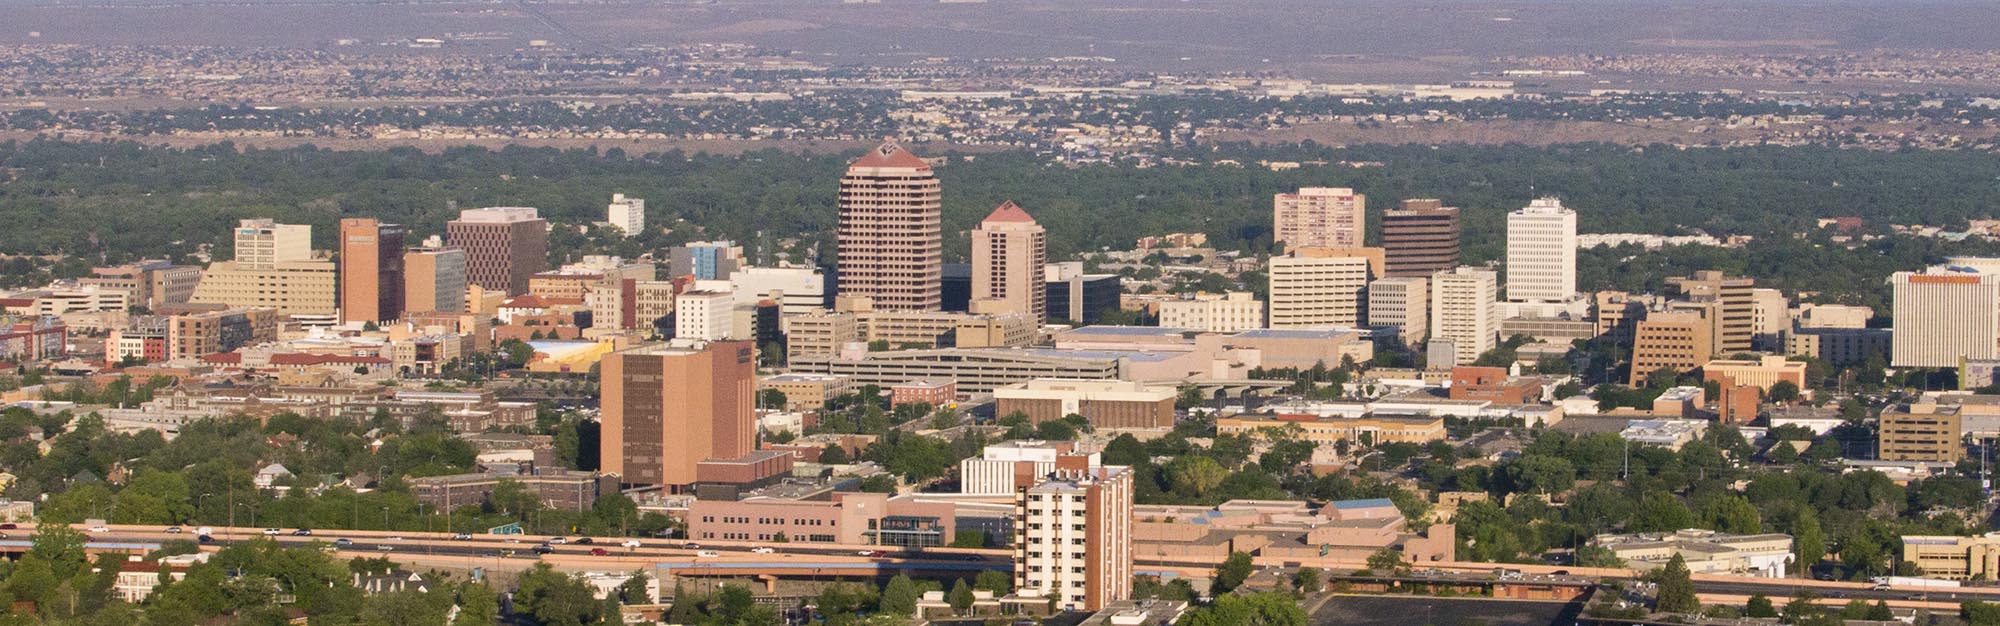 Veduta aerea del centro di Albuquerque